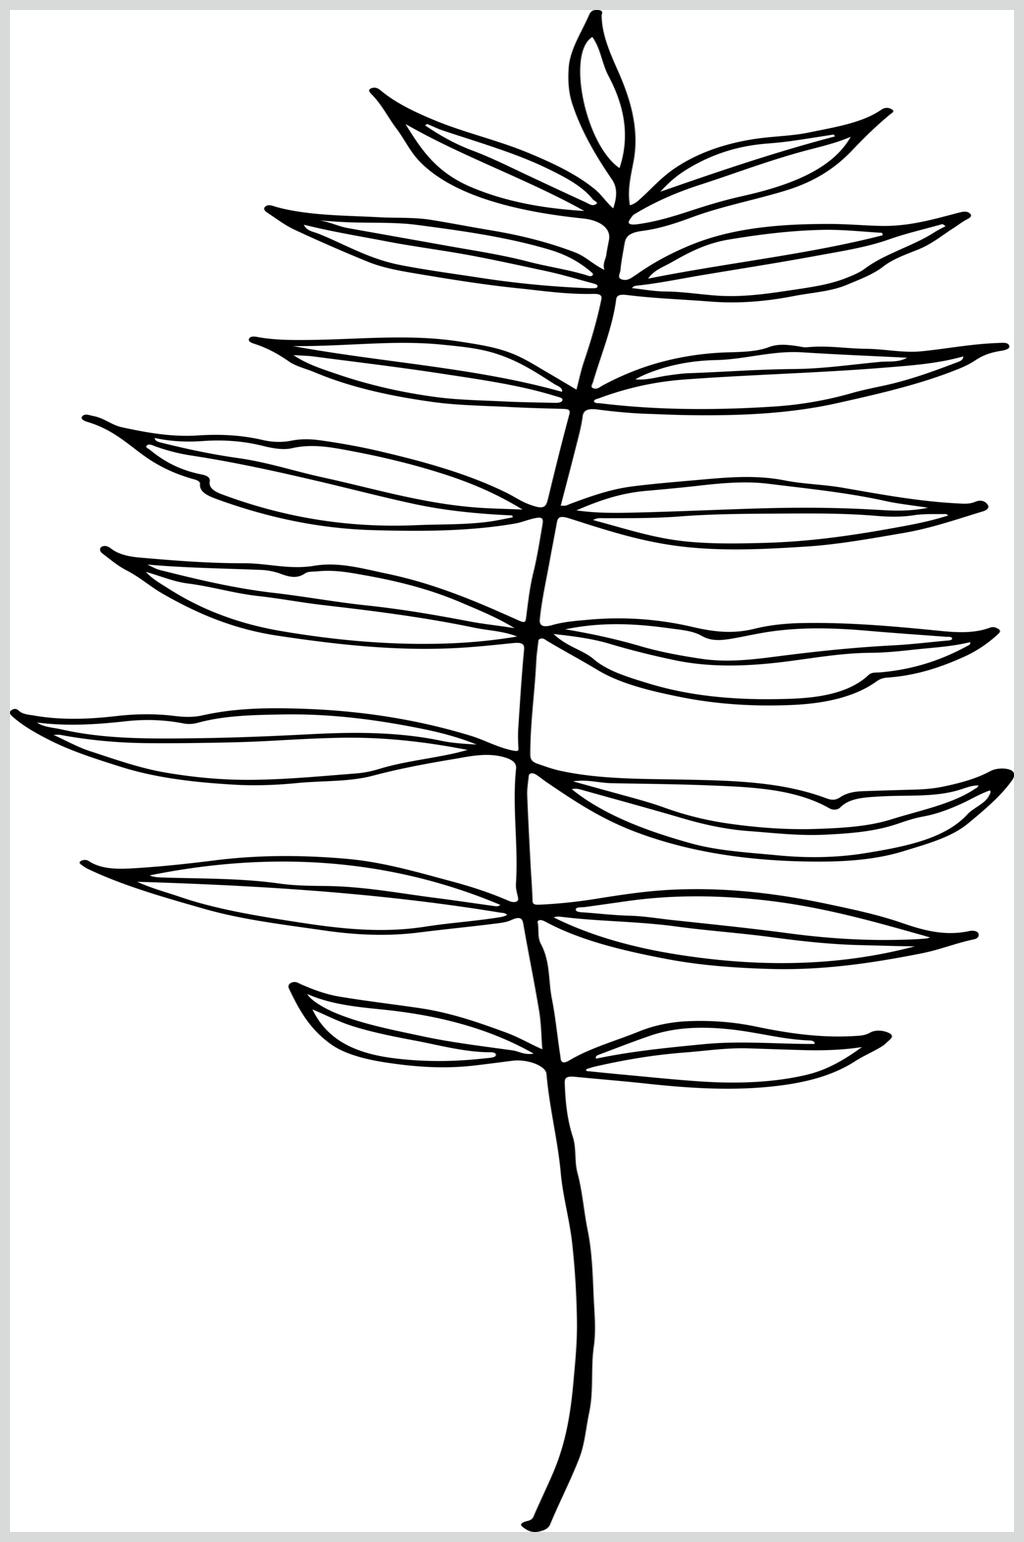 简约雅致黑白叶子线描花卉矢量素材素材